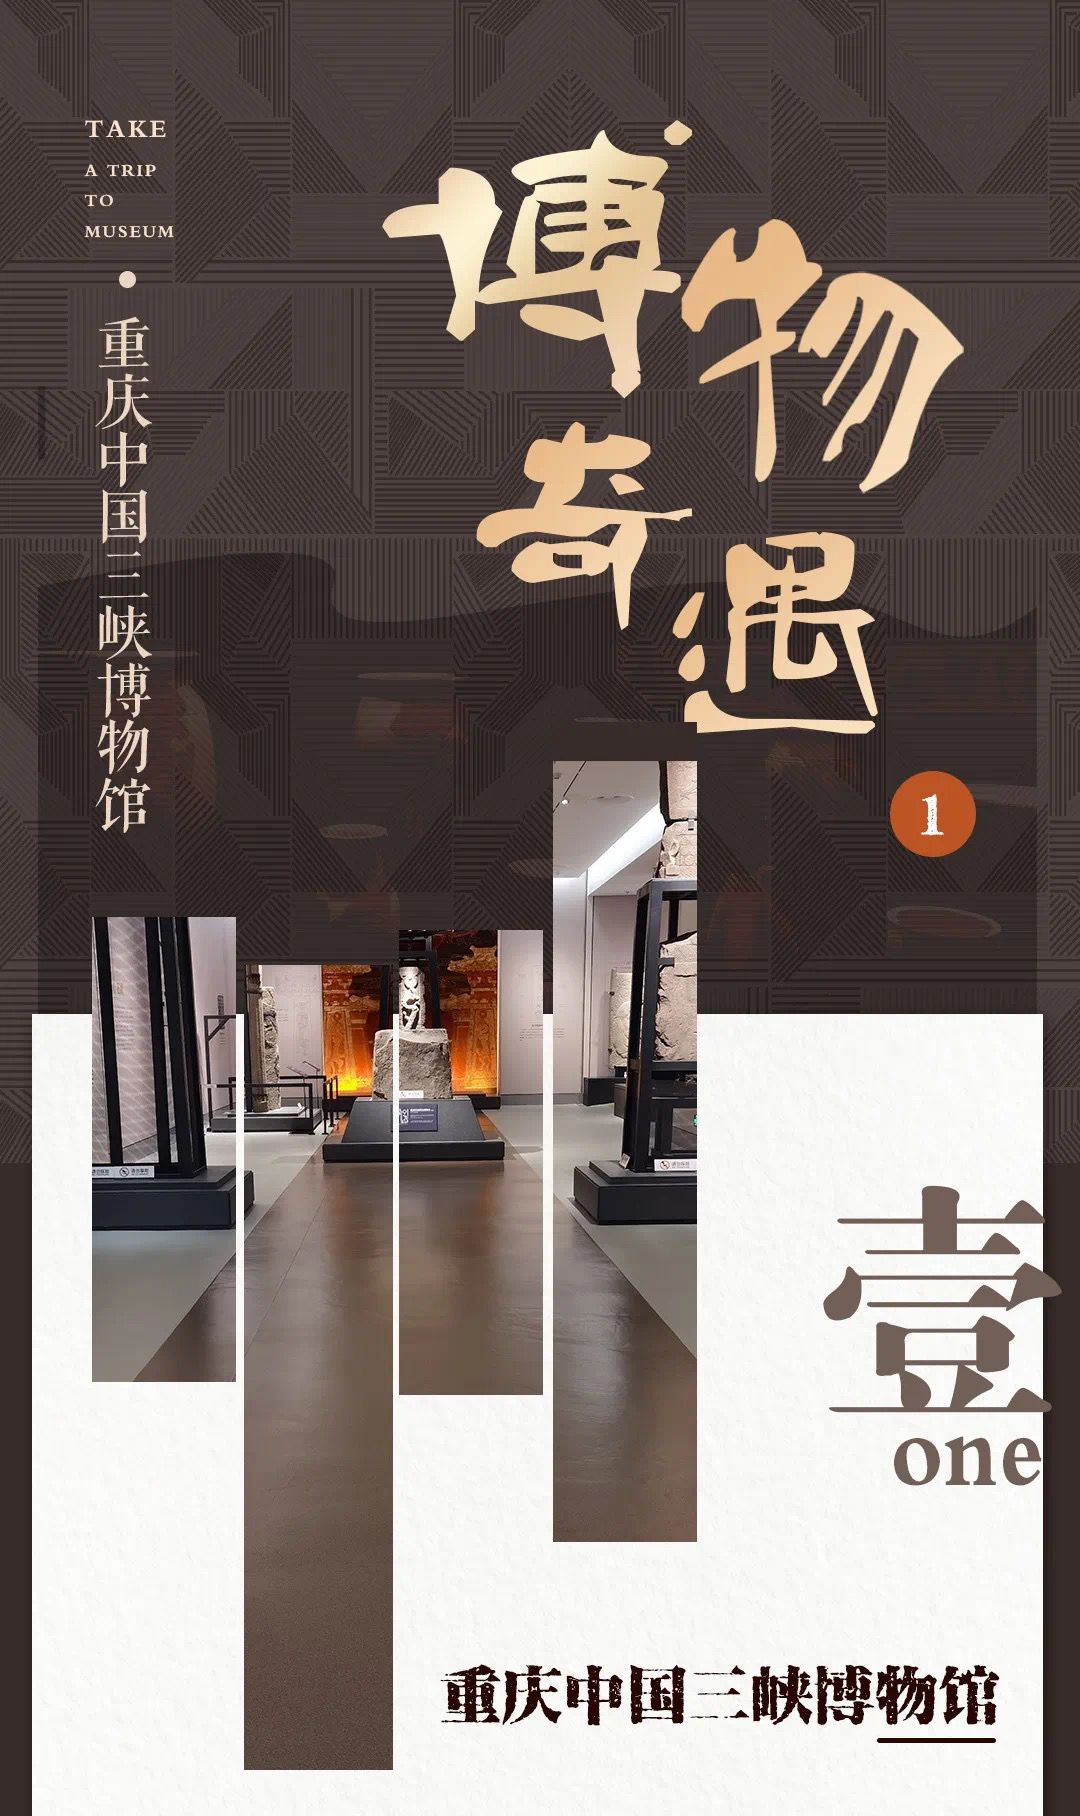 案例赏析 | ok138官方网站·博物奇遇之重庆中国三峡博物馆